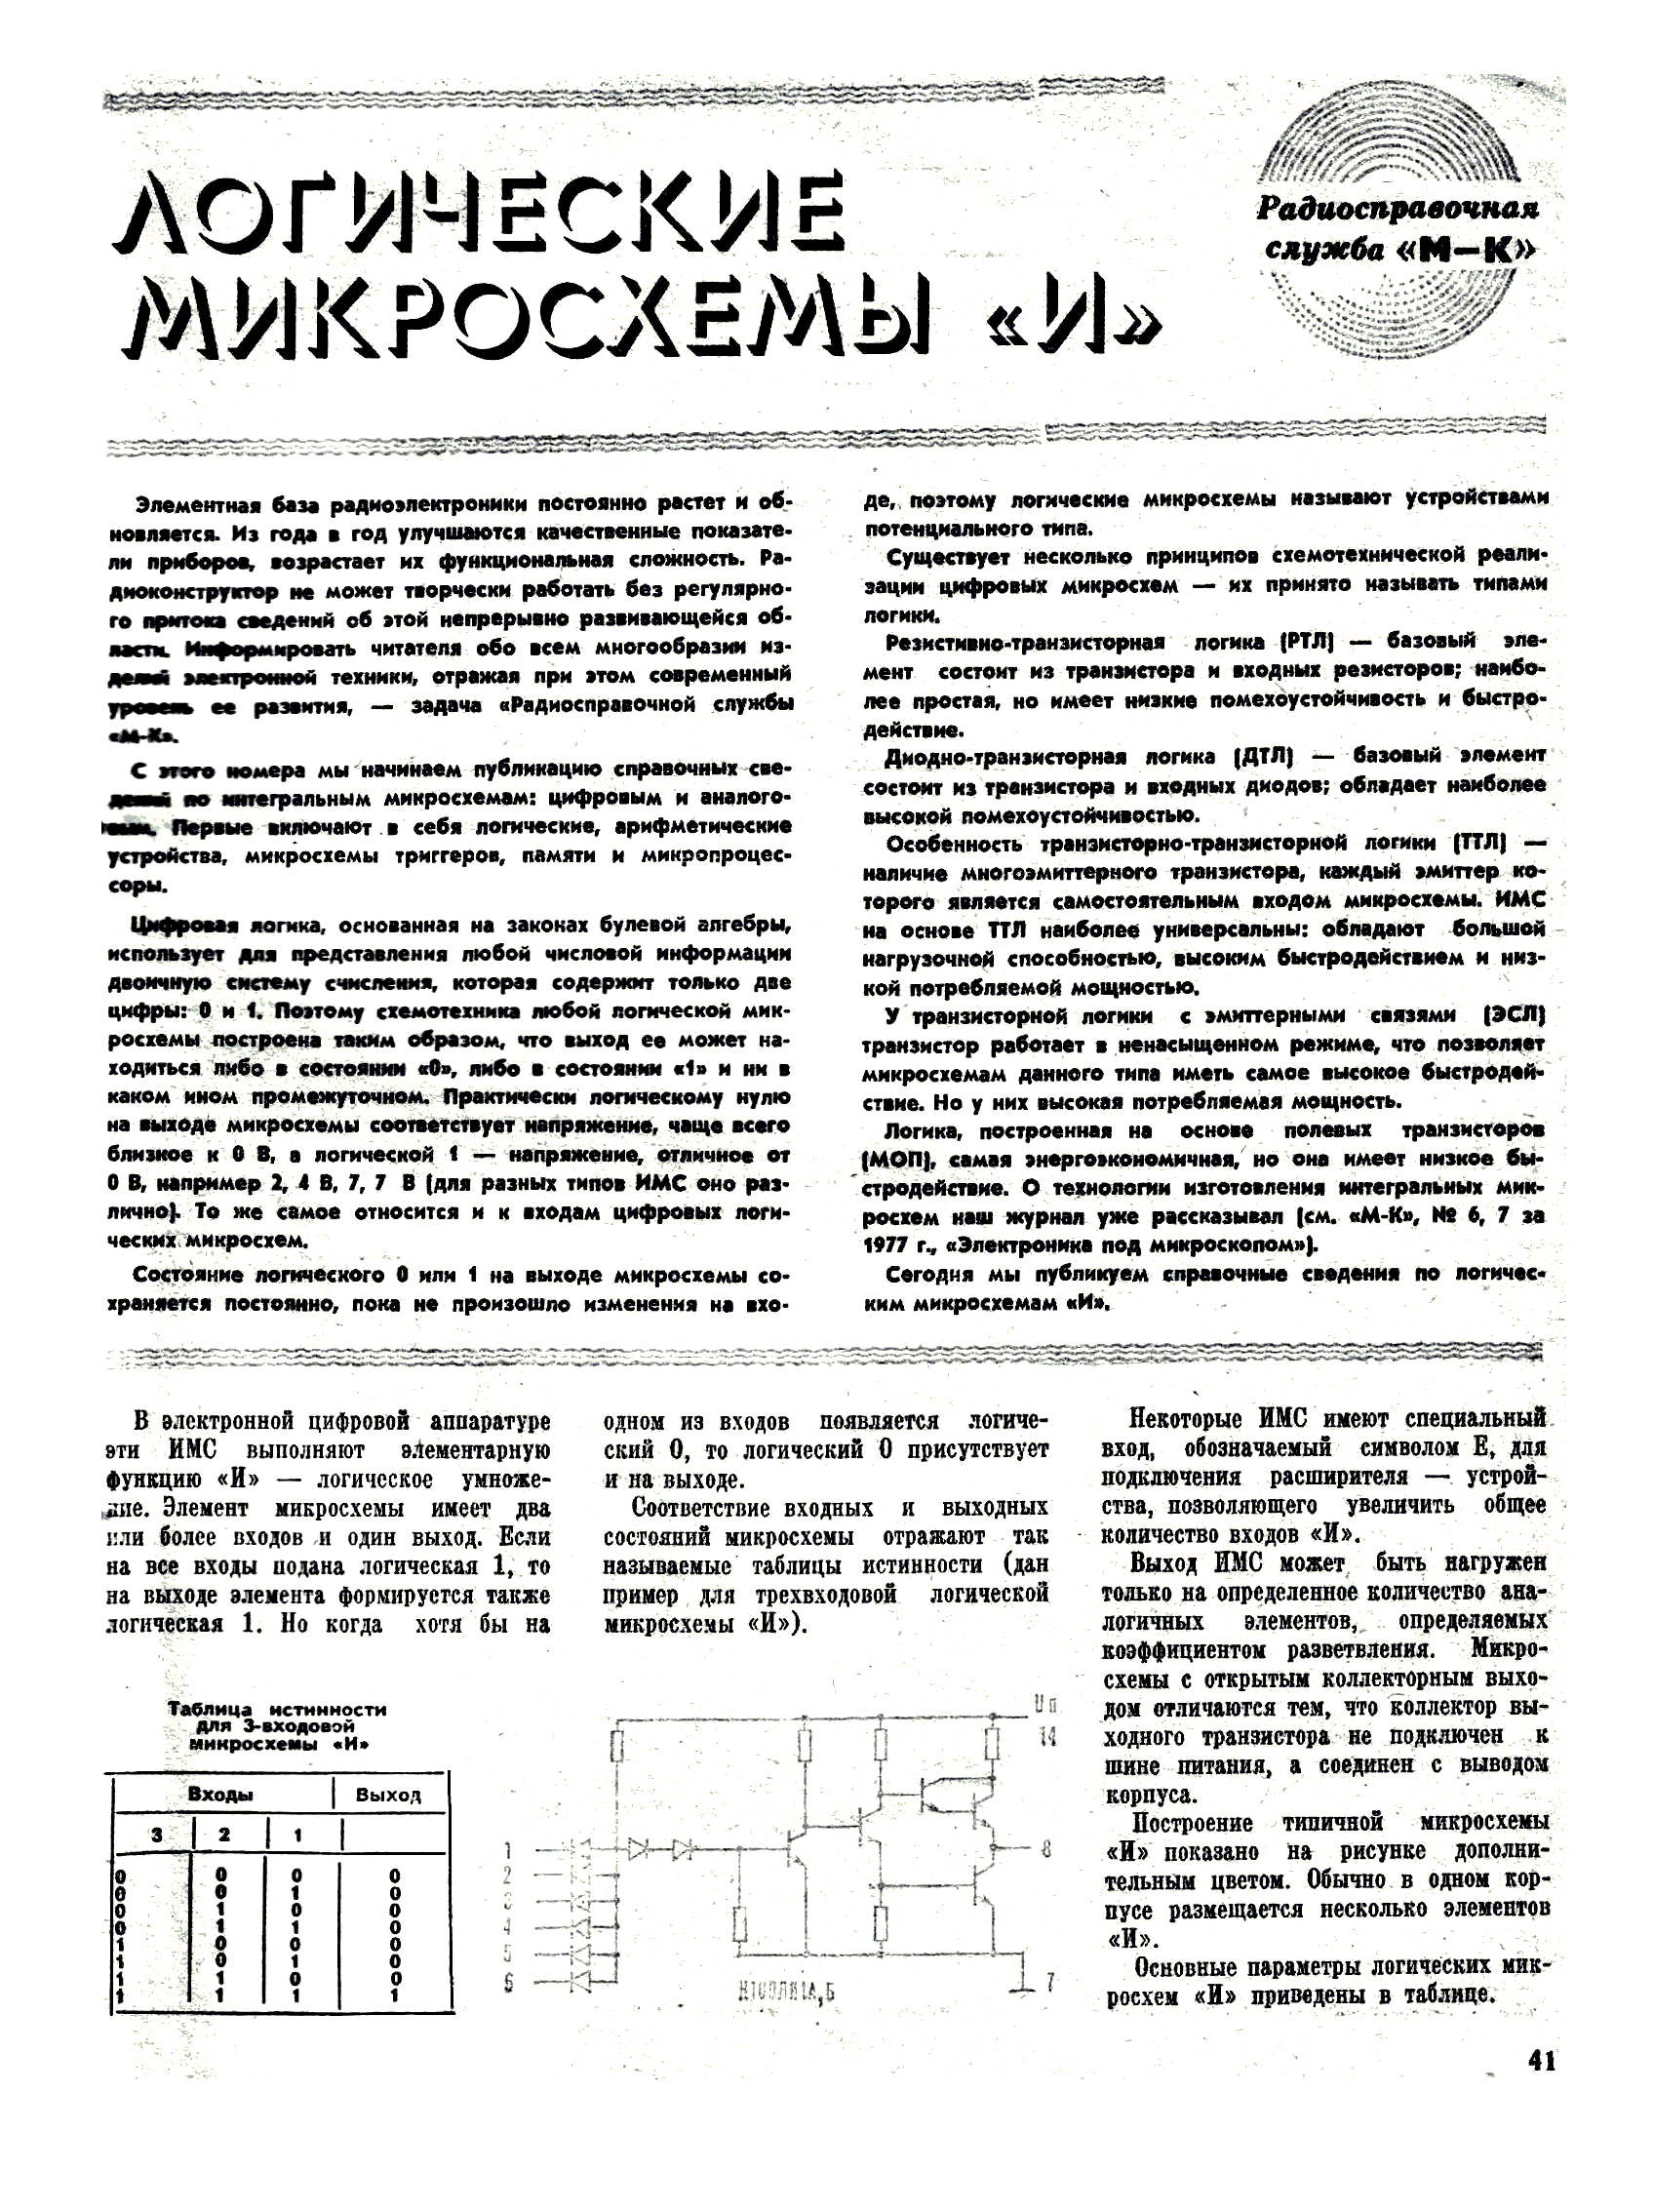 МК 1, 1983, 41 c.